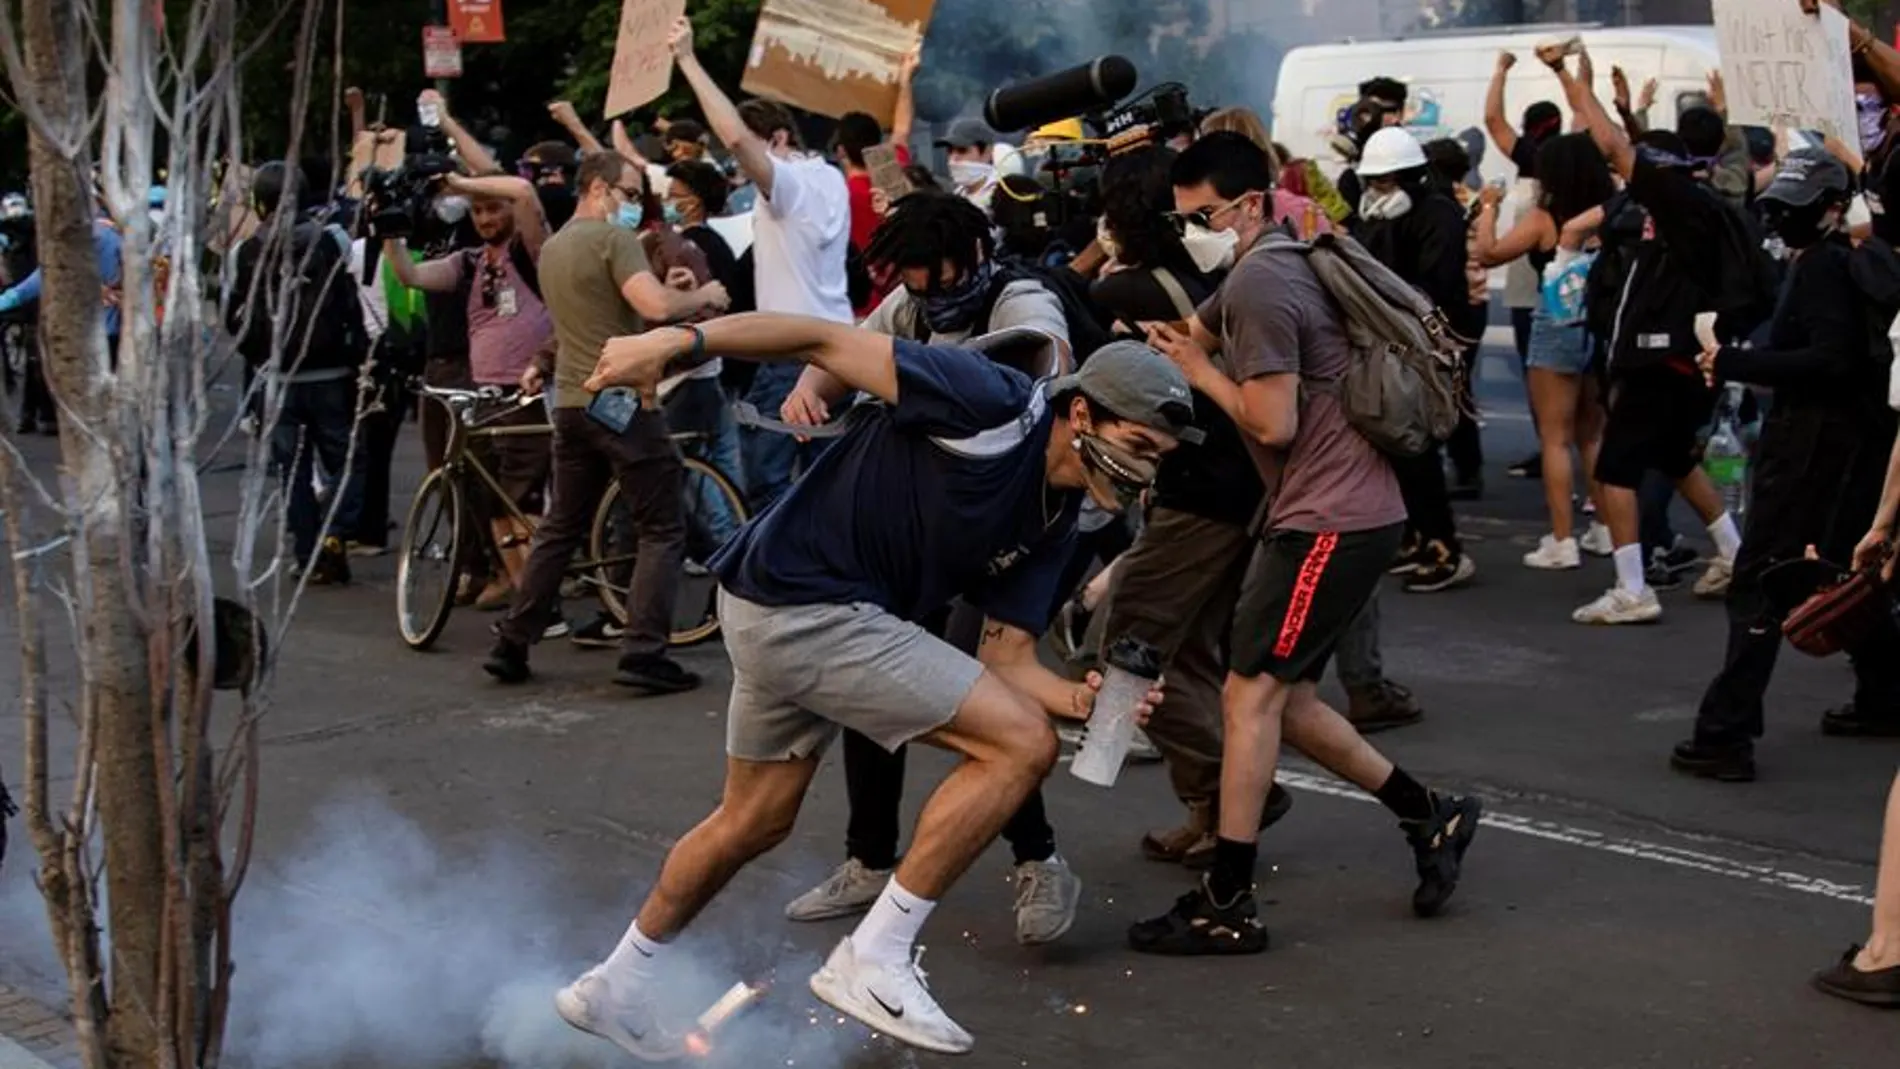 Un bote de gas lacrimógeno cae a los pies de los manifestantes el pasado lunes